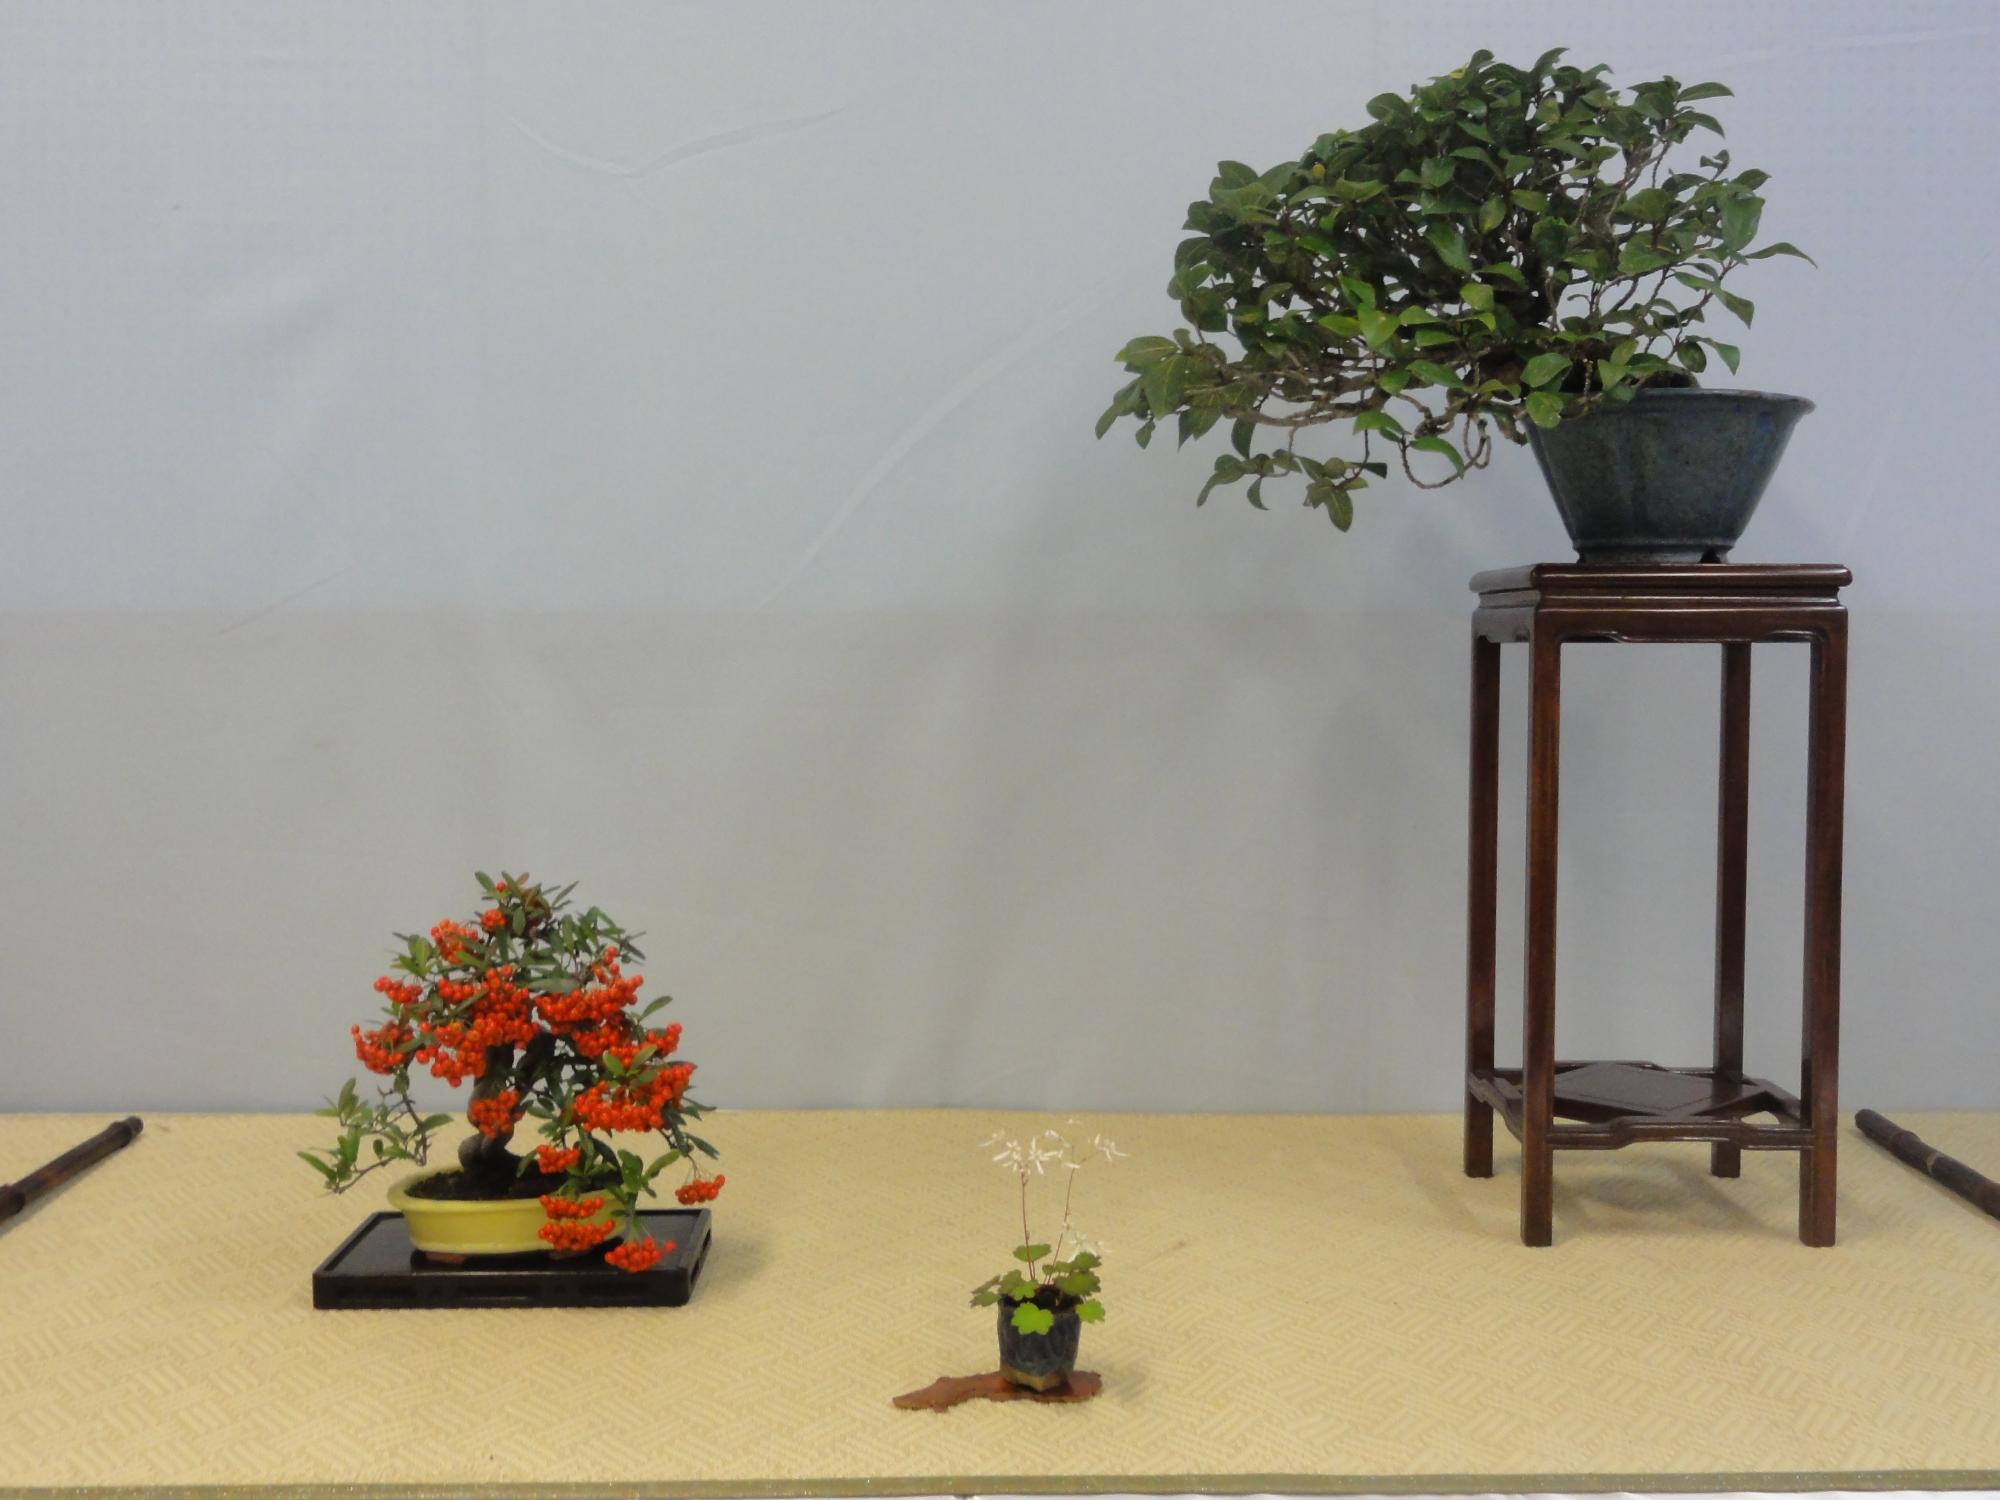 盆栽の作品。赤い実がなった木と、サイドテーブルと手前に山野草が飾ってある。